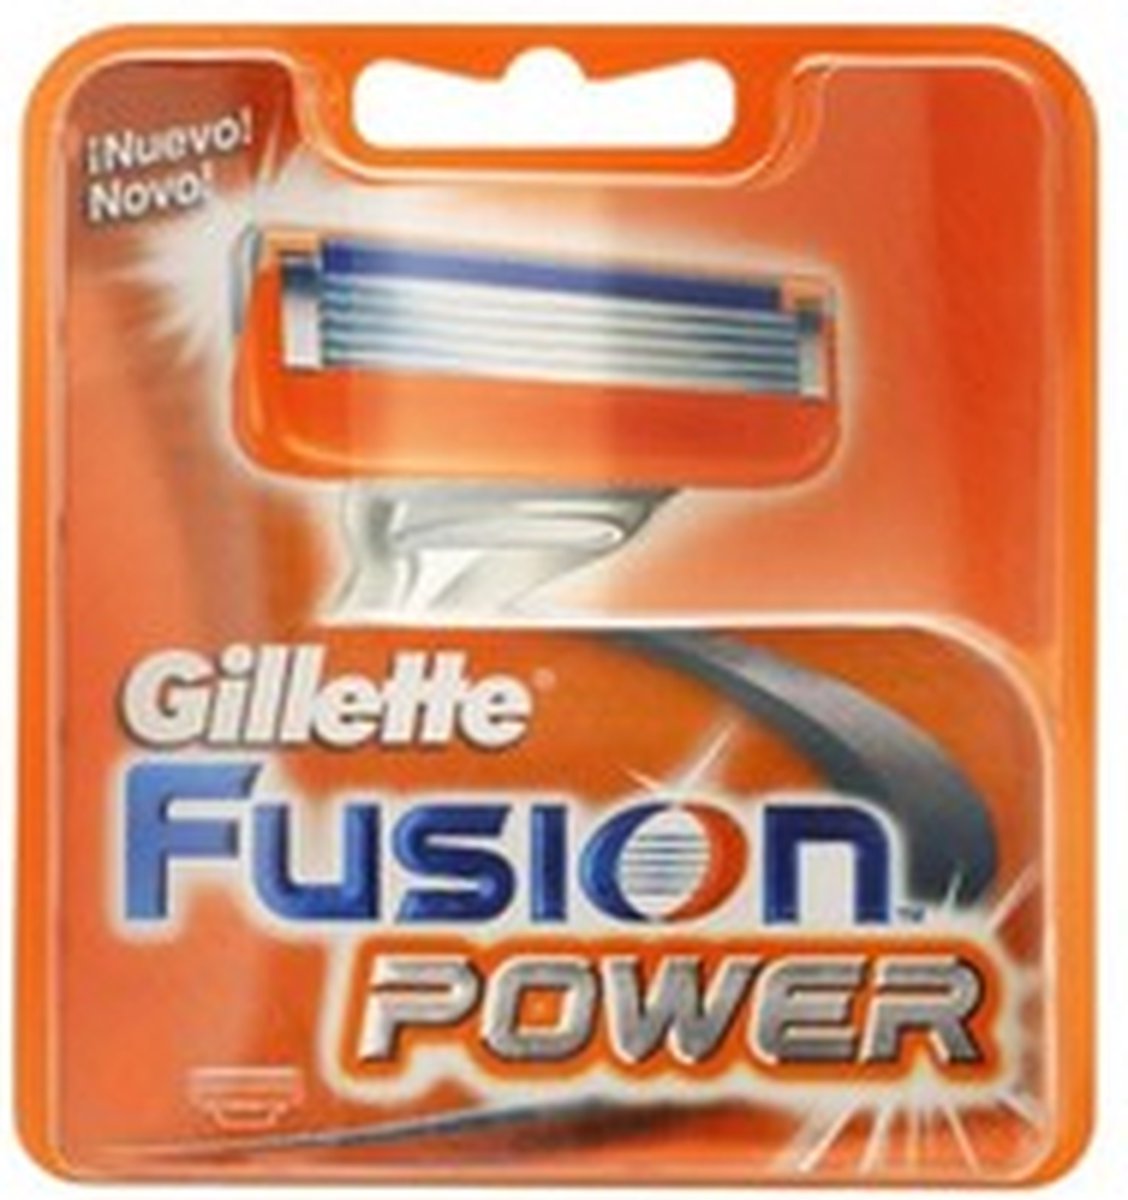 GILLETTE_Fusion Power wymienne ostrza do maszynki 4 sztuki